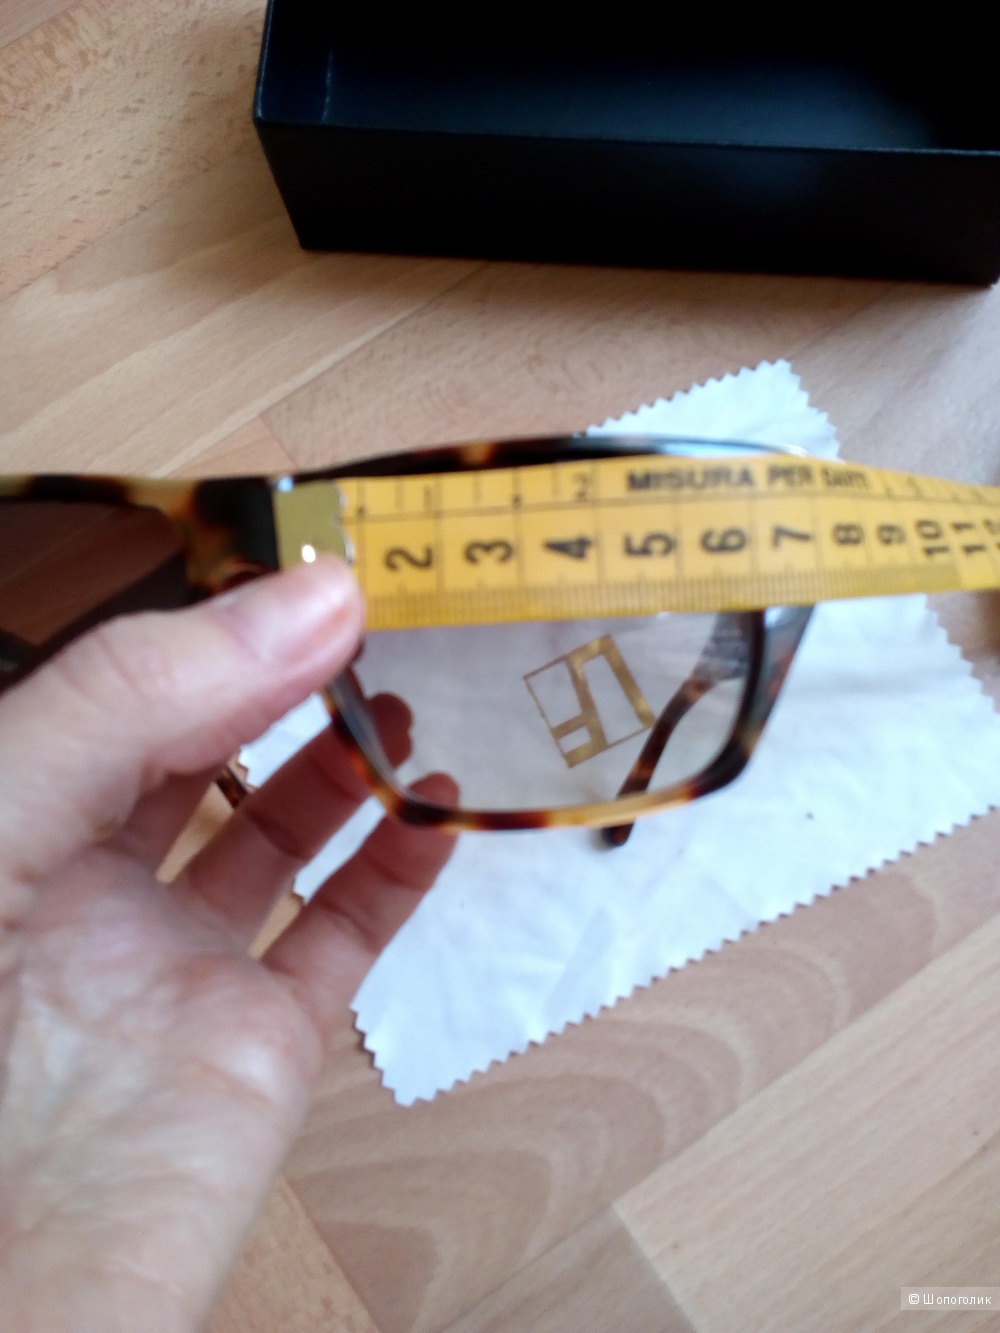 Солнцезащитные очки , Linda Farrow Luxe.